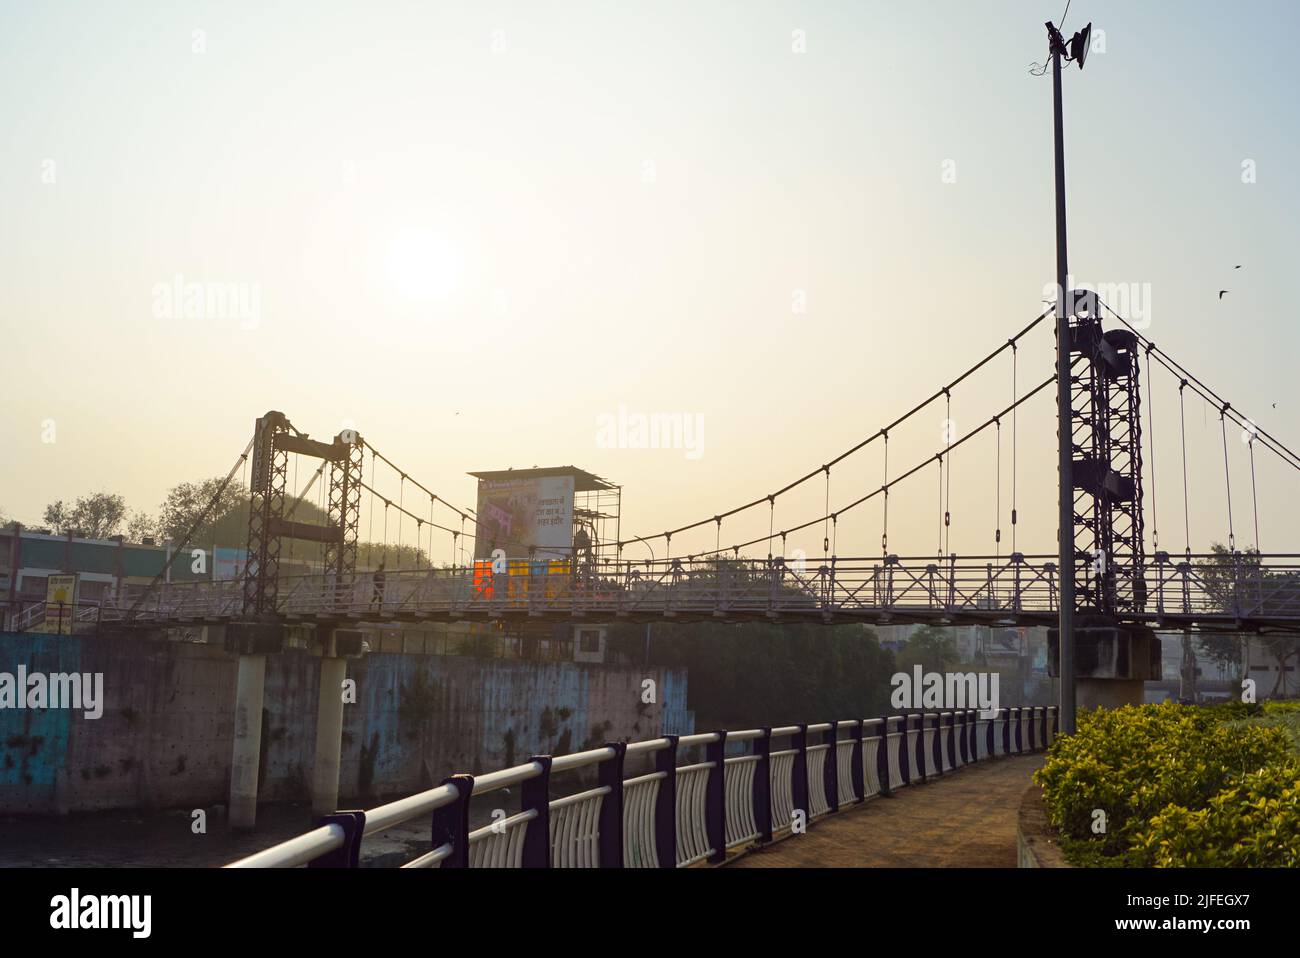 Anand Mohan Mathur Jhula Pul ist eine öffentliche Fußgängerhängebrücke in Indore, Madhya Pradesh, Indien. Stockfoto